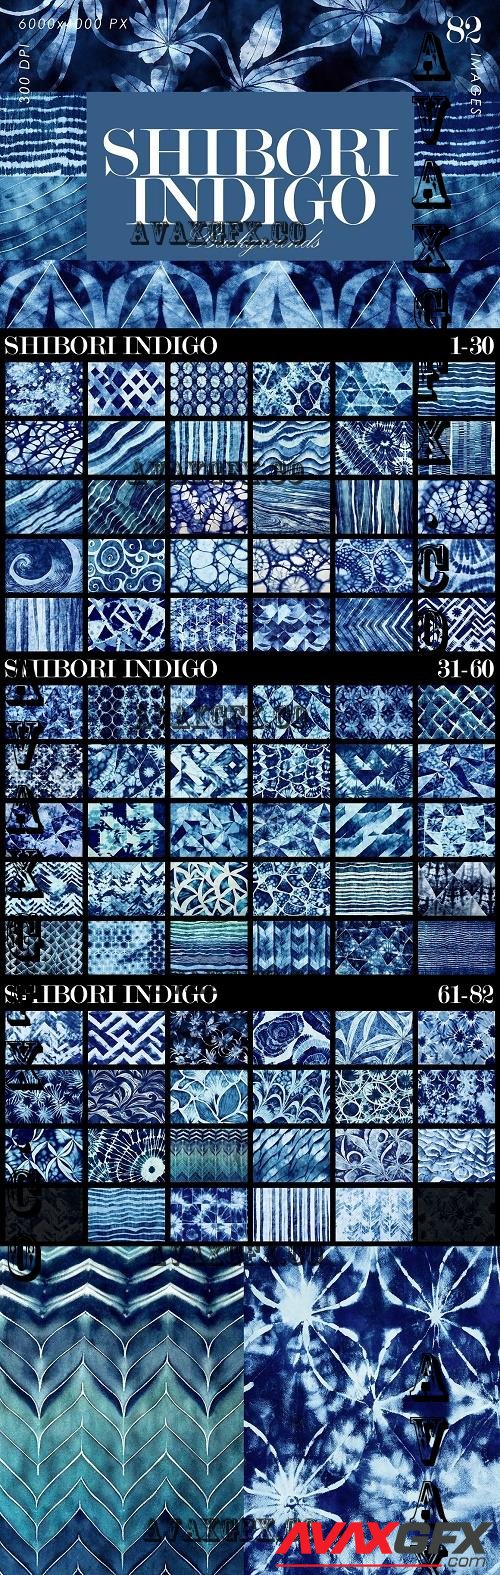 Shibori Indigo Japanese Dye Textures - 10172359